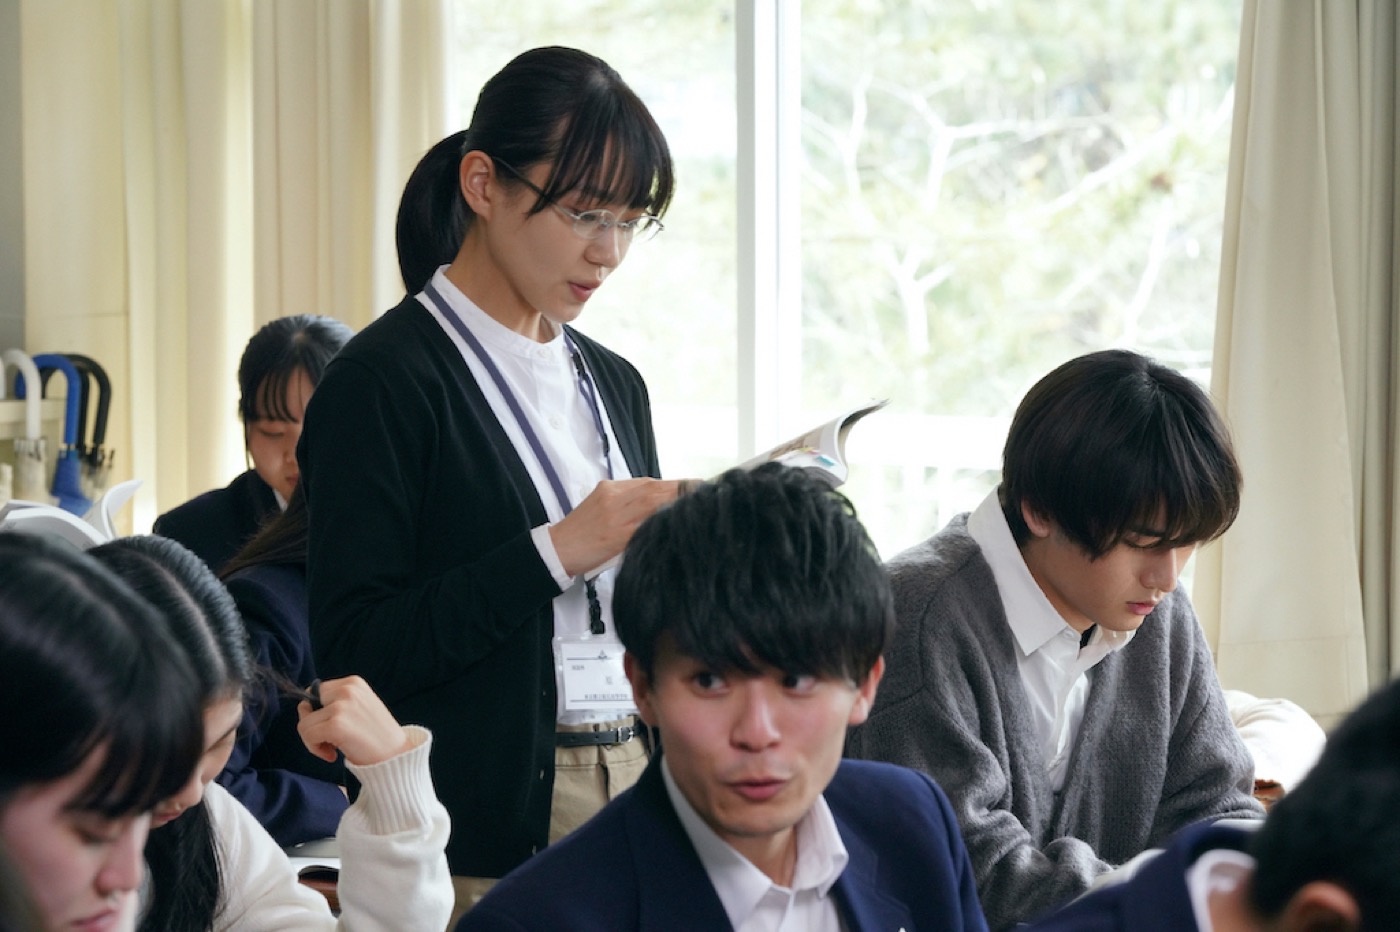 奈緒主演映画『先生の白い嘘』×yama、主題歌「独白」スペシャルコラボPVを公開